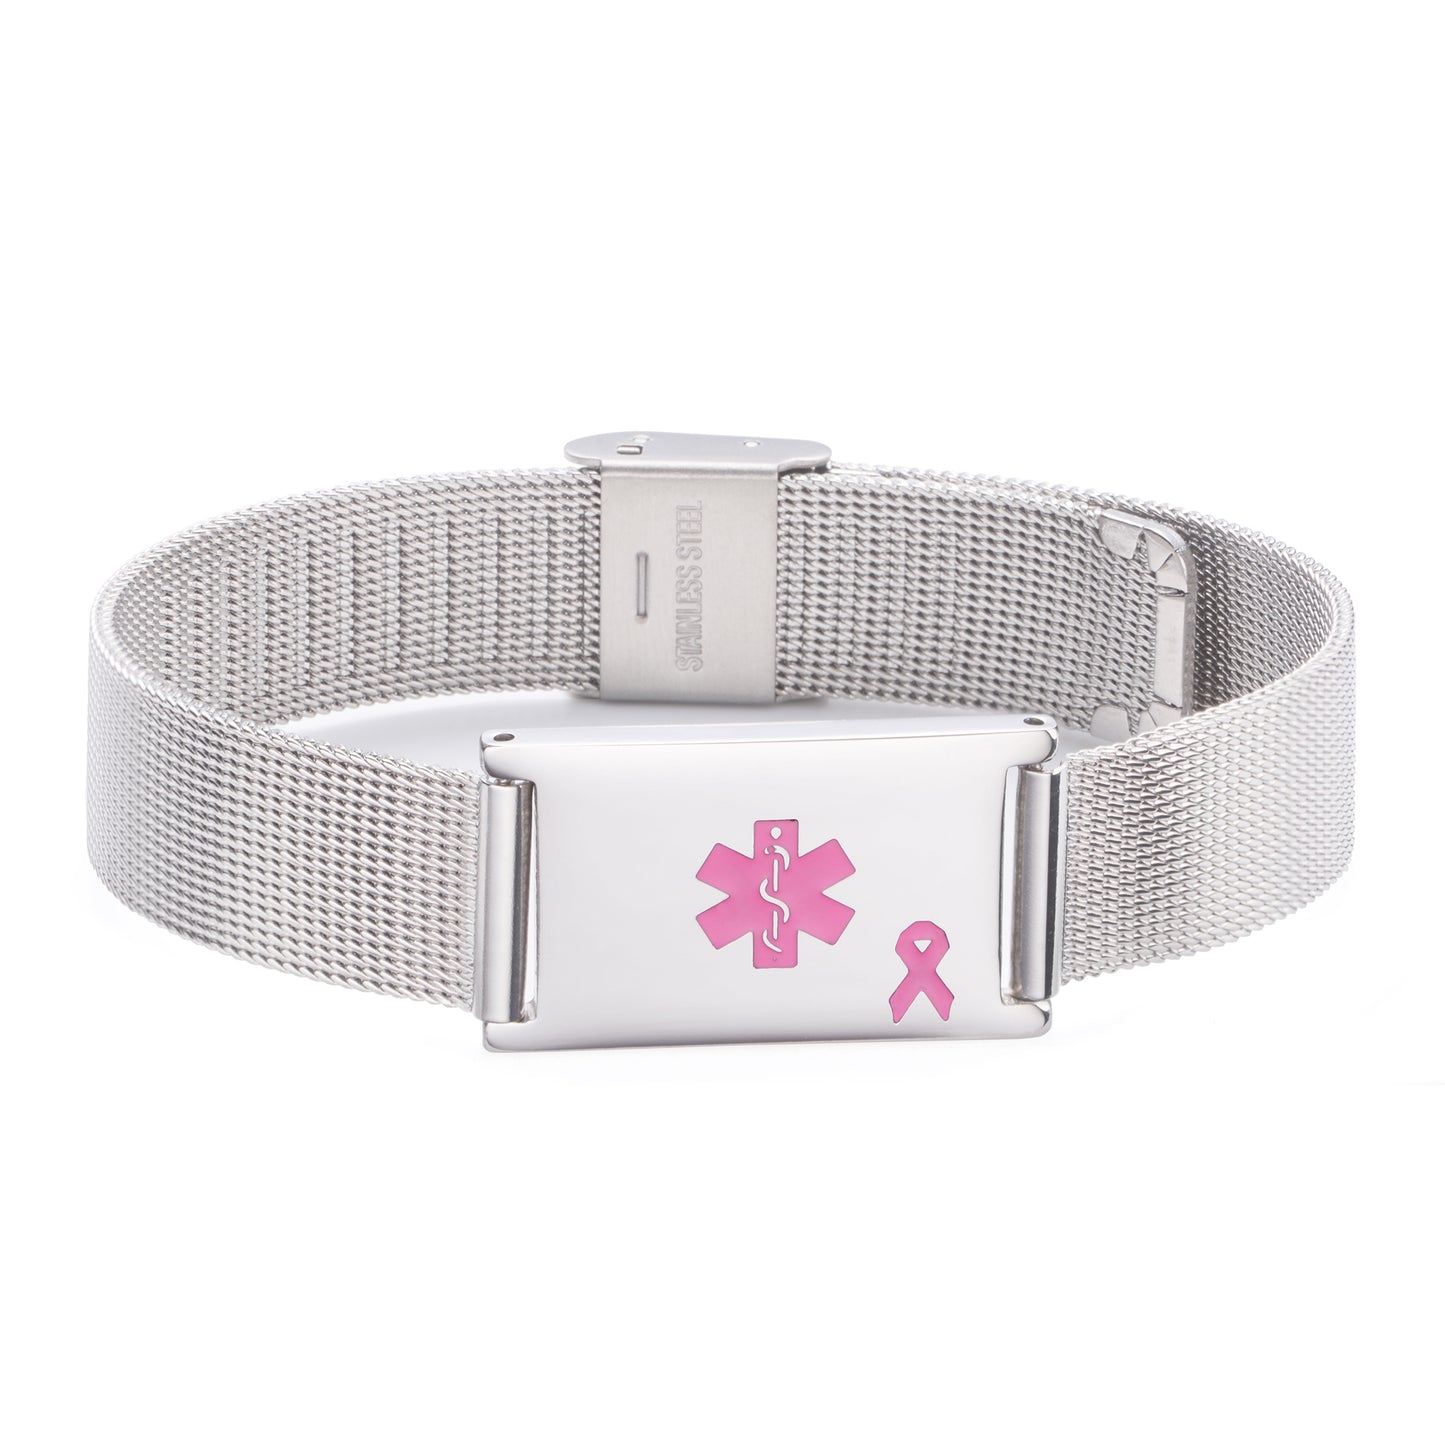 Lymphedema Alert  Medical ID Alert Bracelet for Breast Cancer